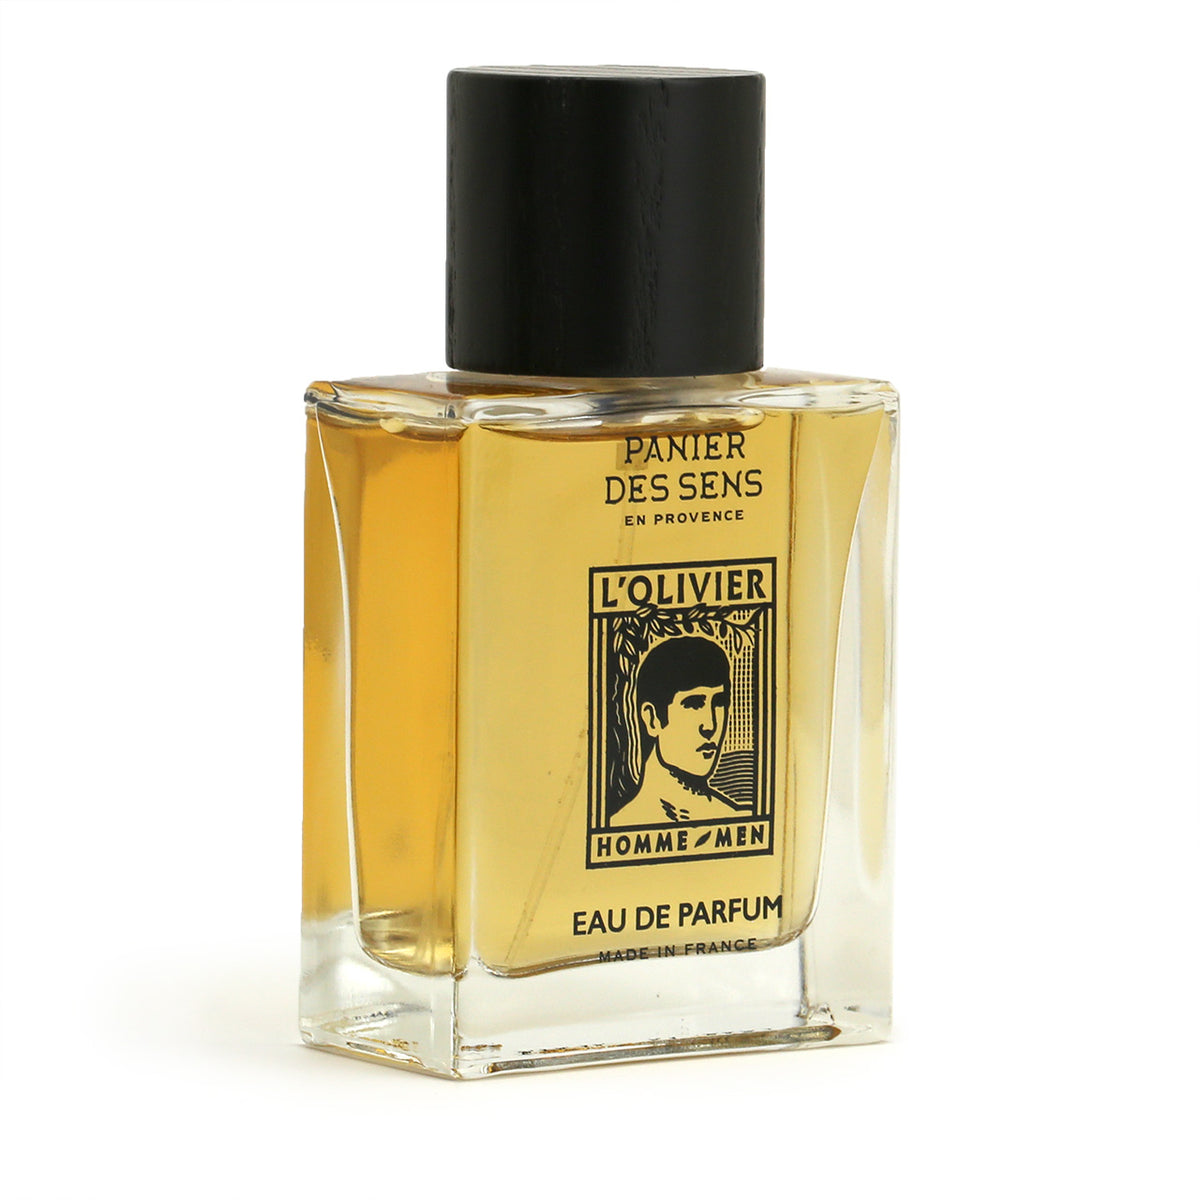 bottle of Eau de Parfum, three-quarter view